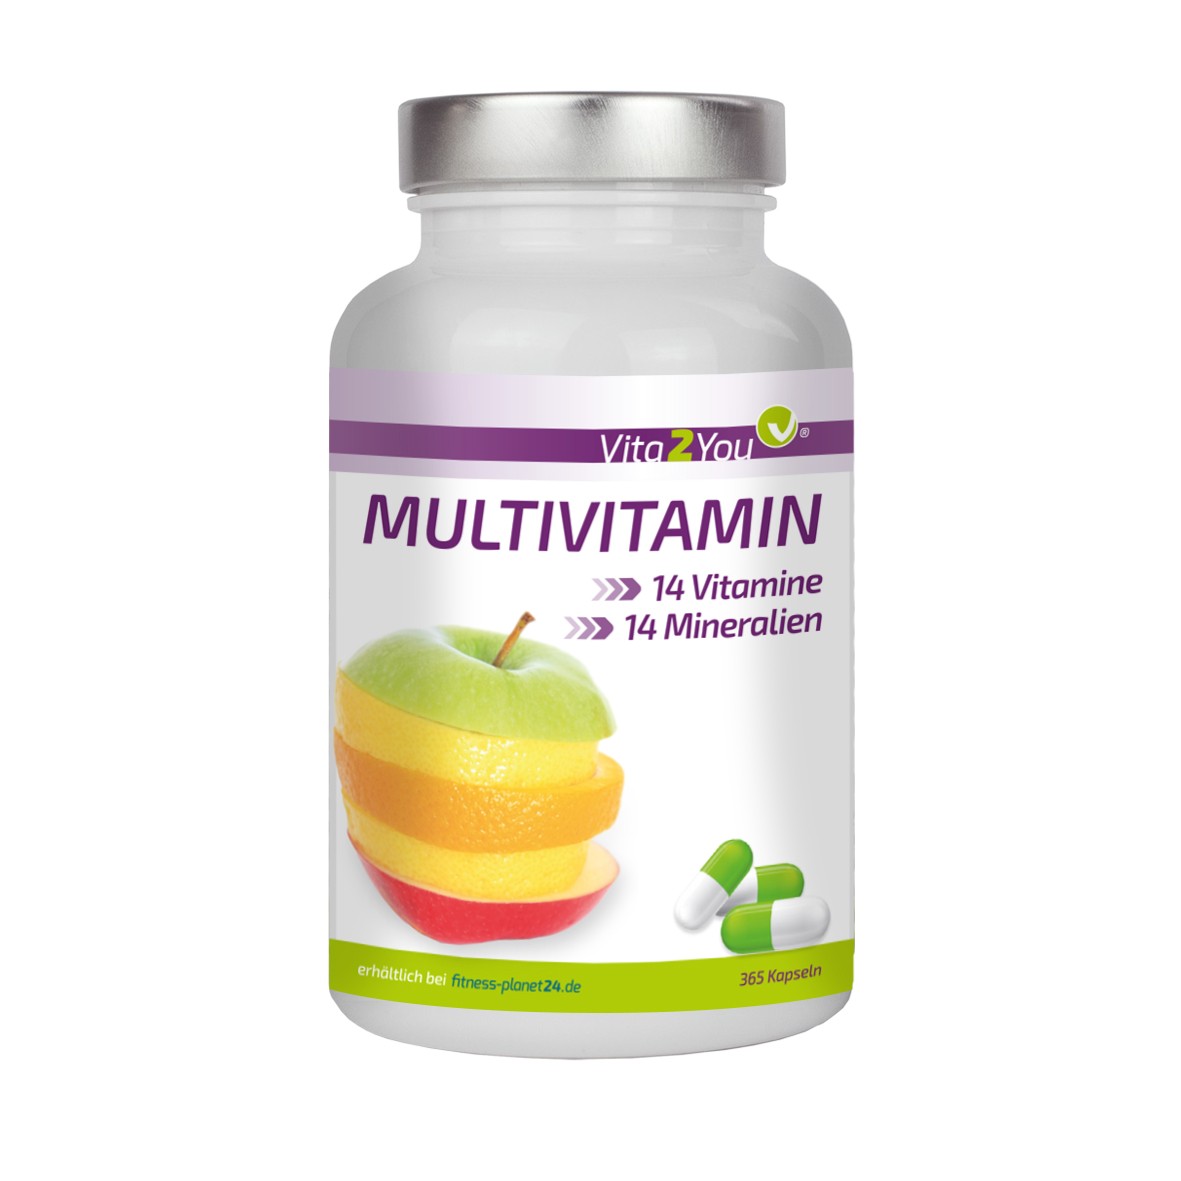 Vita2You Multivitamin 365 Kapseln - 28 Vitamine & Mineralien - Premium Qualit�t von vita2you